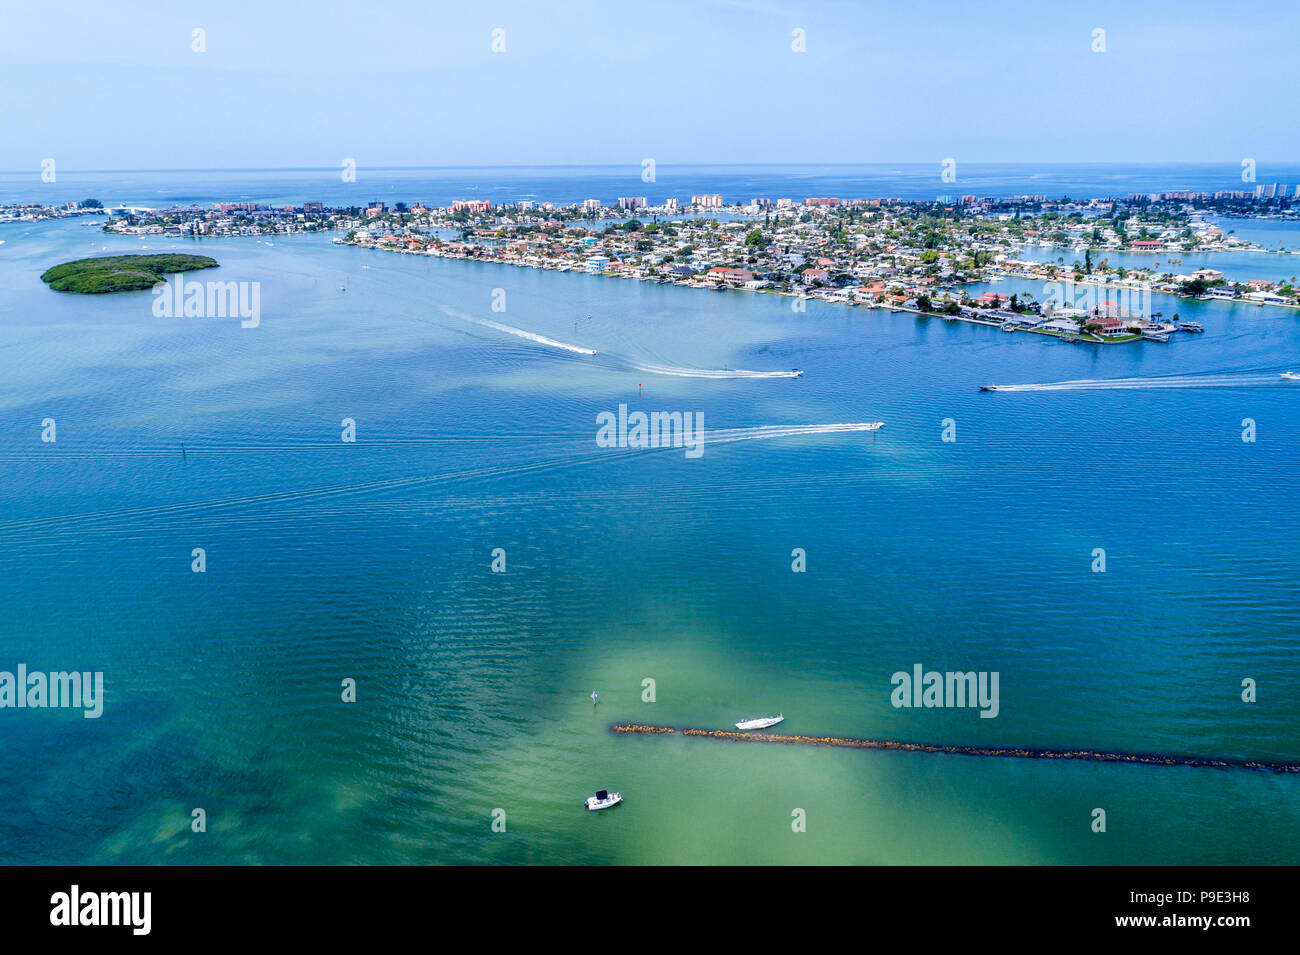 Saint-Pétersbourg Floride, Madeira Beach, Boca Ciega Bay eau, Golfe du Mexique, bateaux, eau, vue aérienne aérienne de l'oeil d'oiseau au-dessus, les visiteurs Voyage trave Banque D'Images